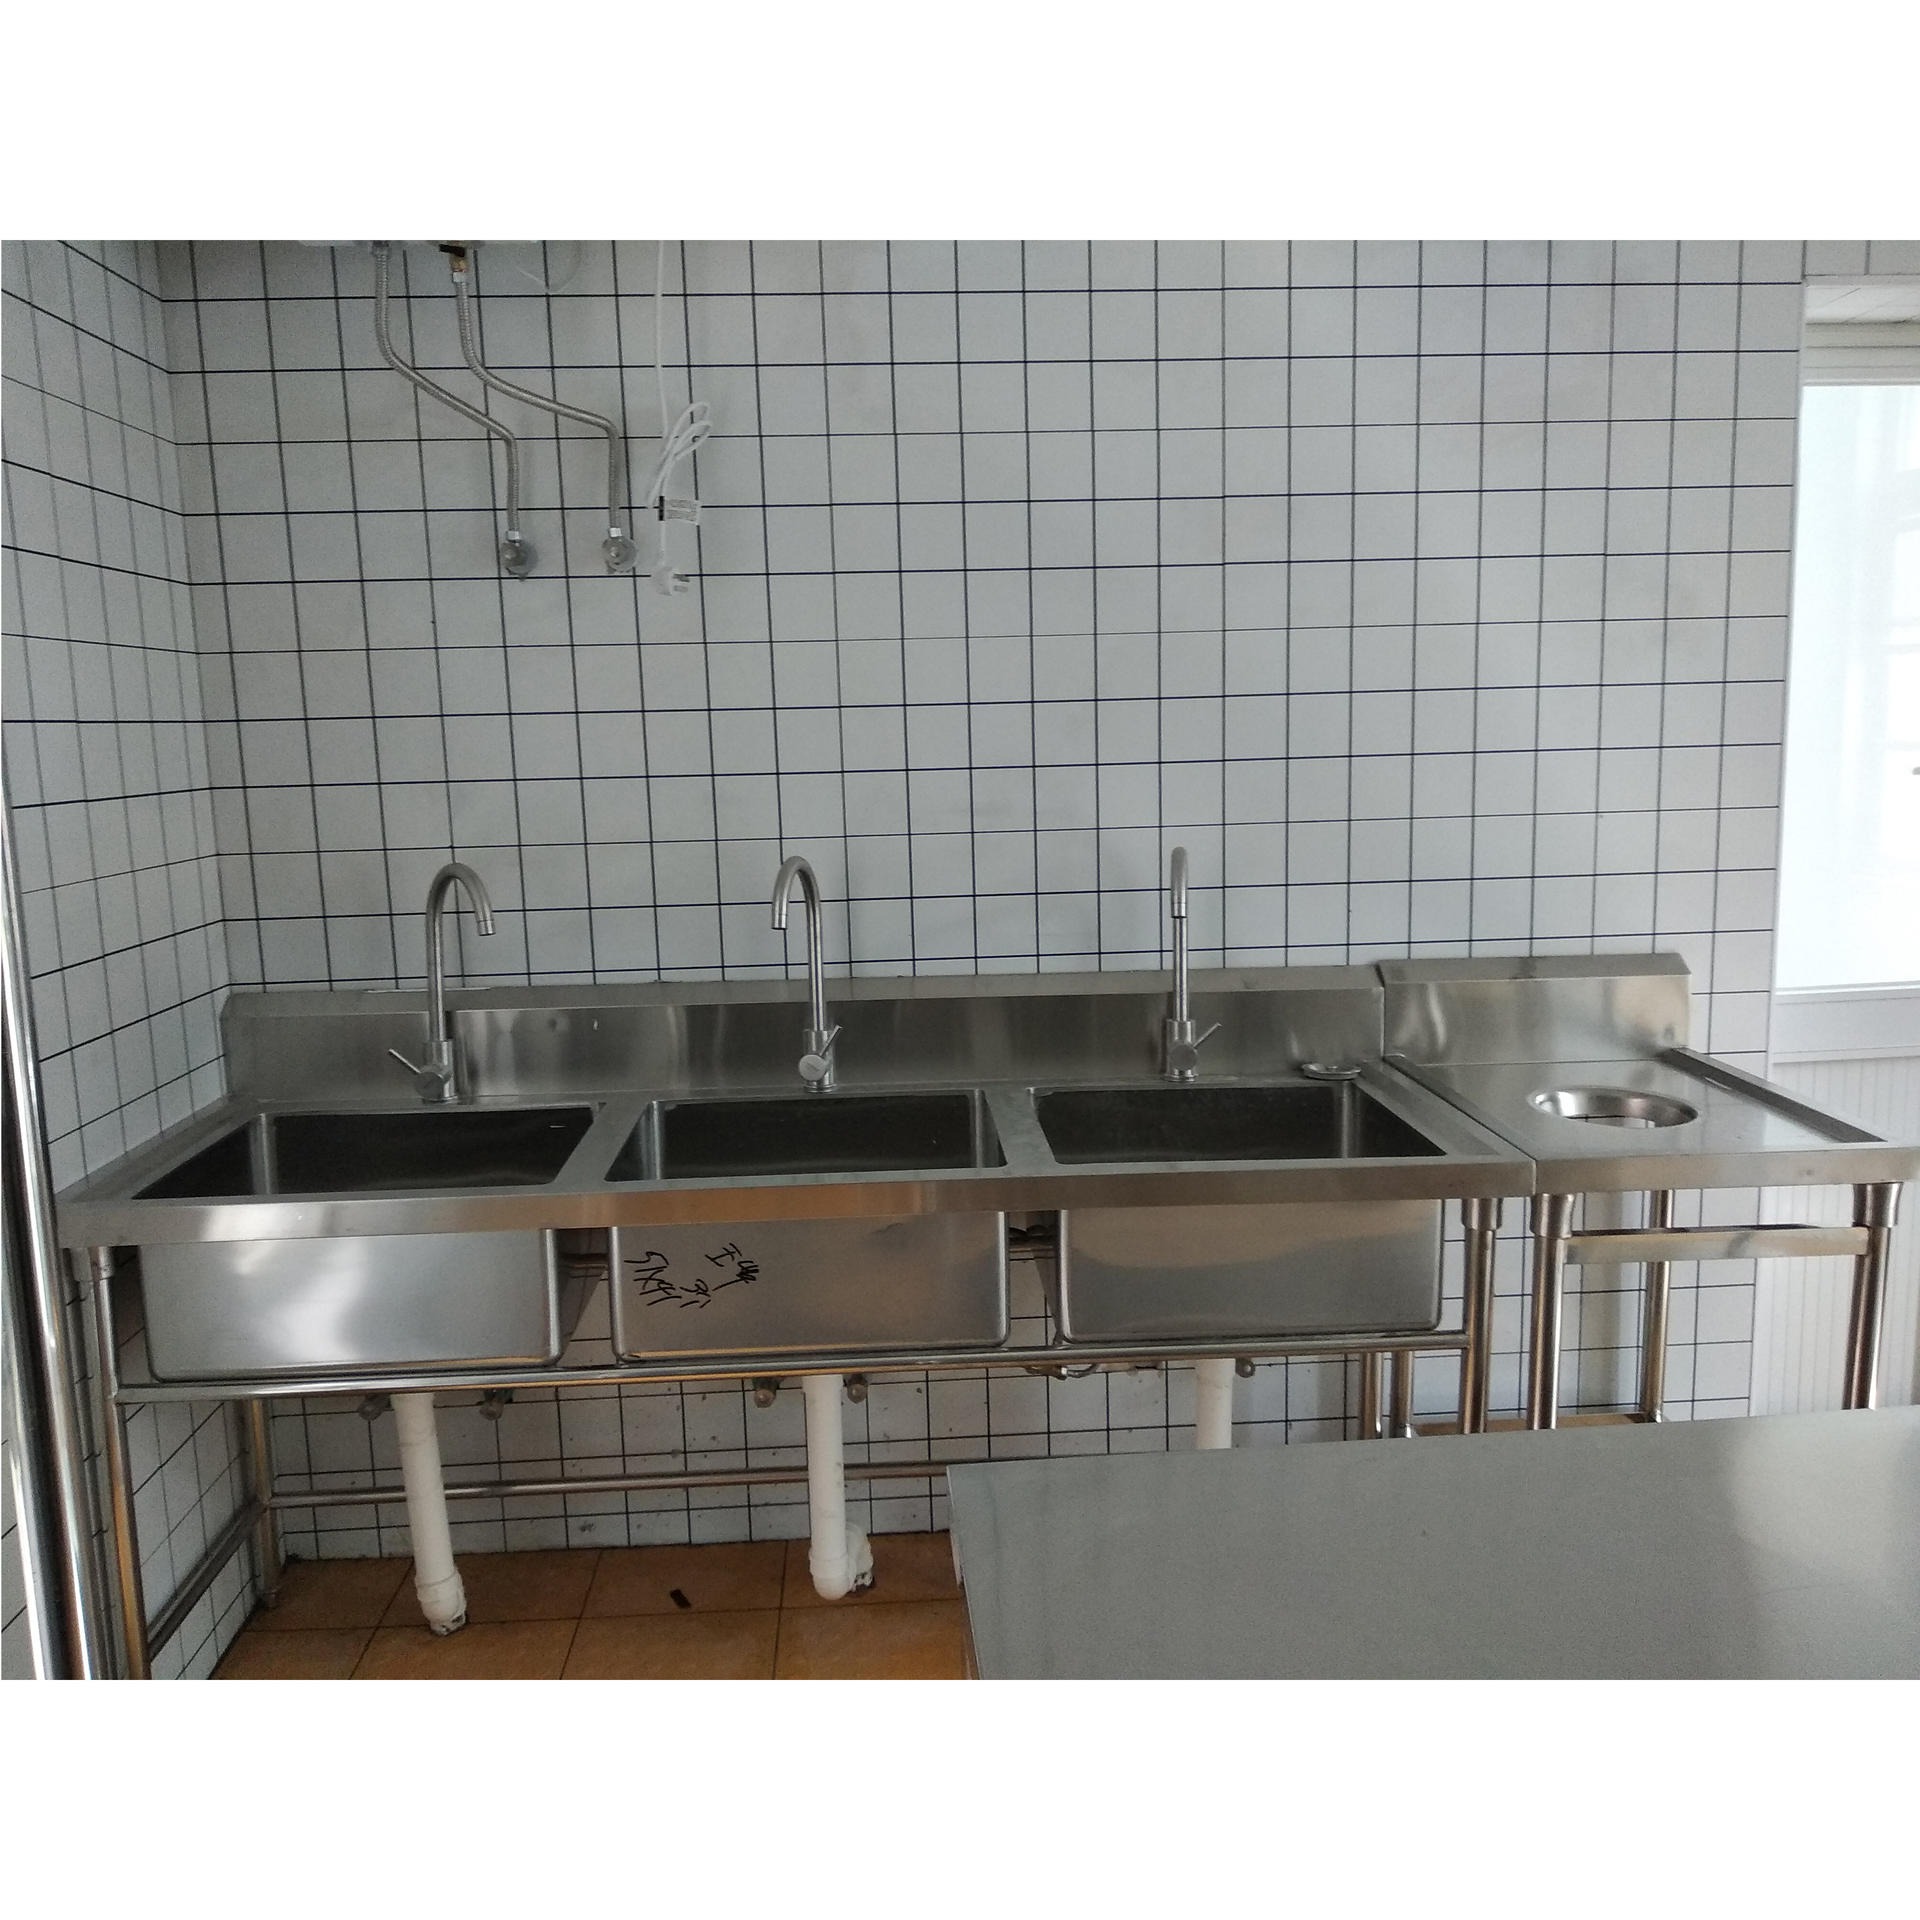 上海厨房设备厂家定做不锈钢三眼水池 不锈钢厨房设备 不锈钢水池 牢固耐用